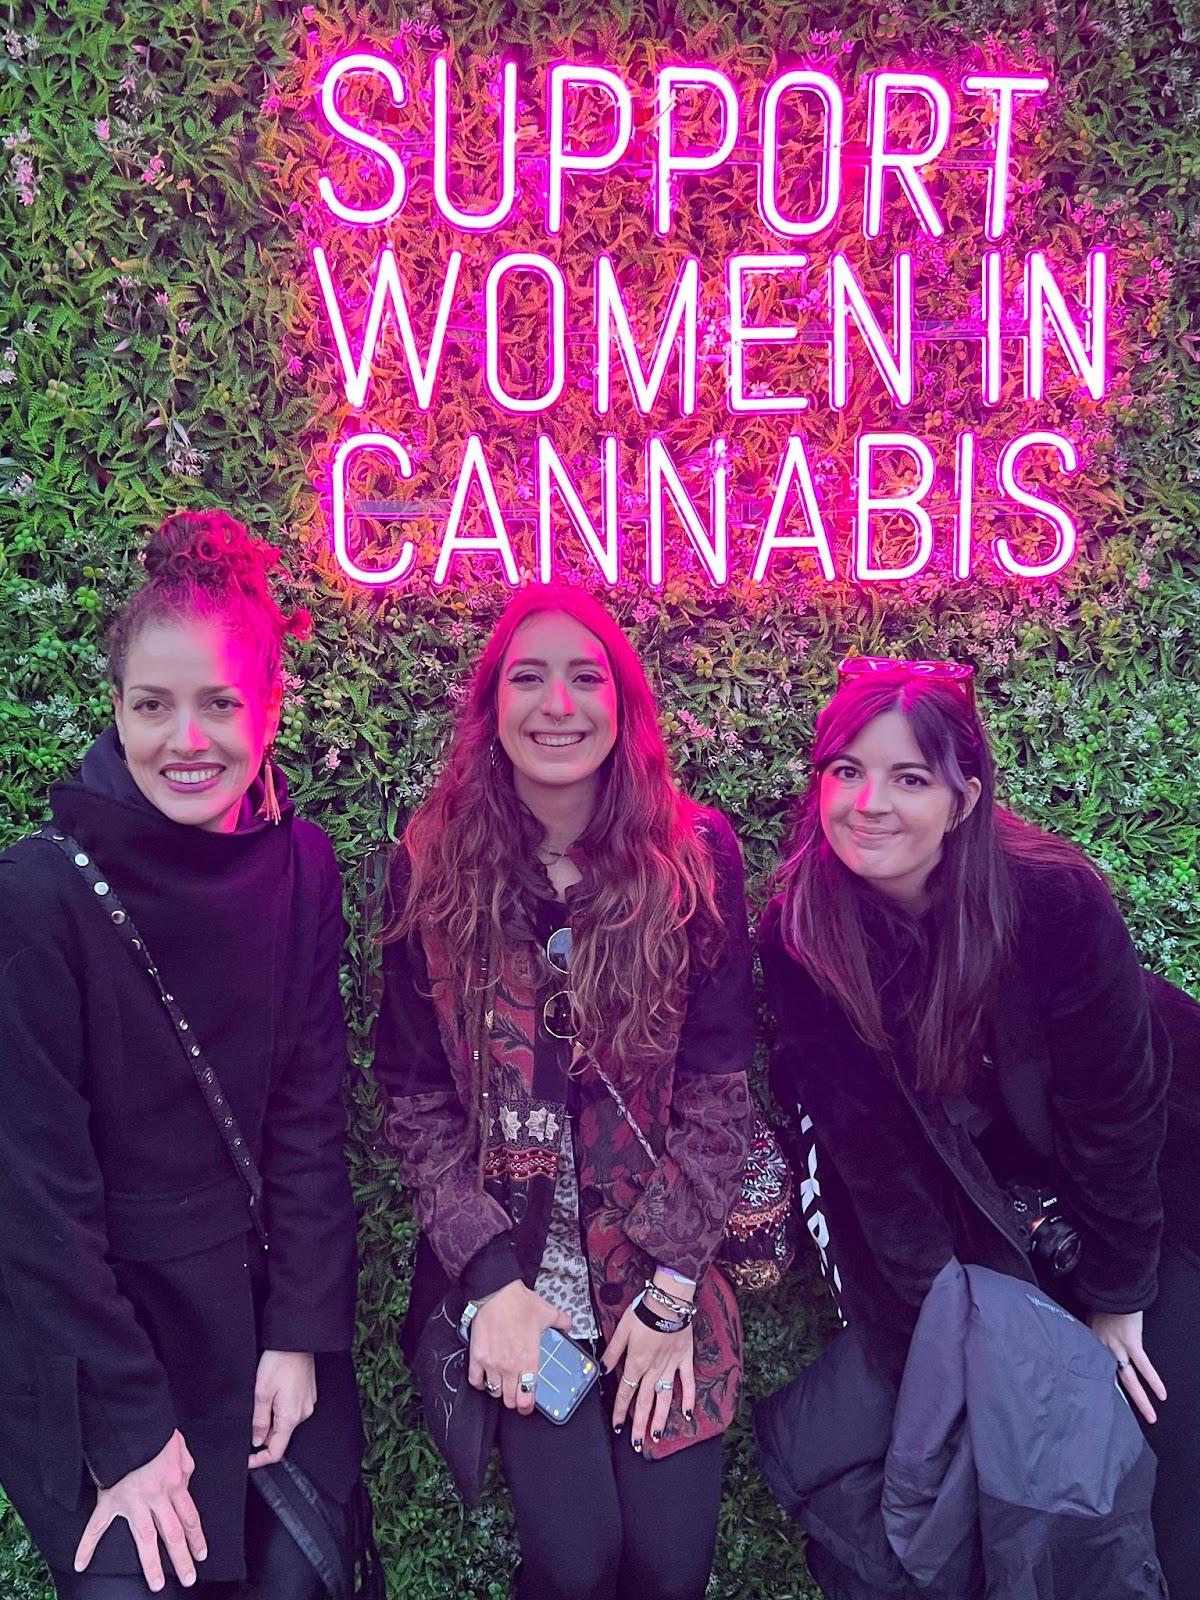 Foto colorida de três mulheres na frente de um neon rosa dizendo:  “Apoie as mulheres na cannabis” 